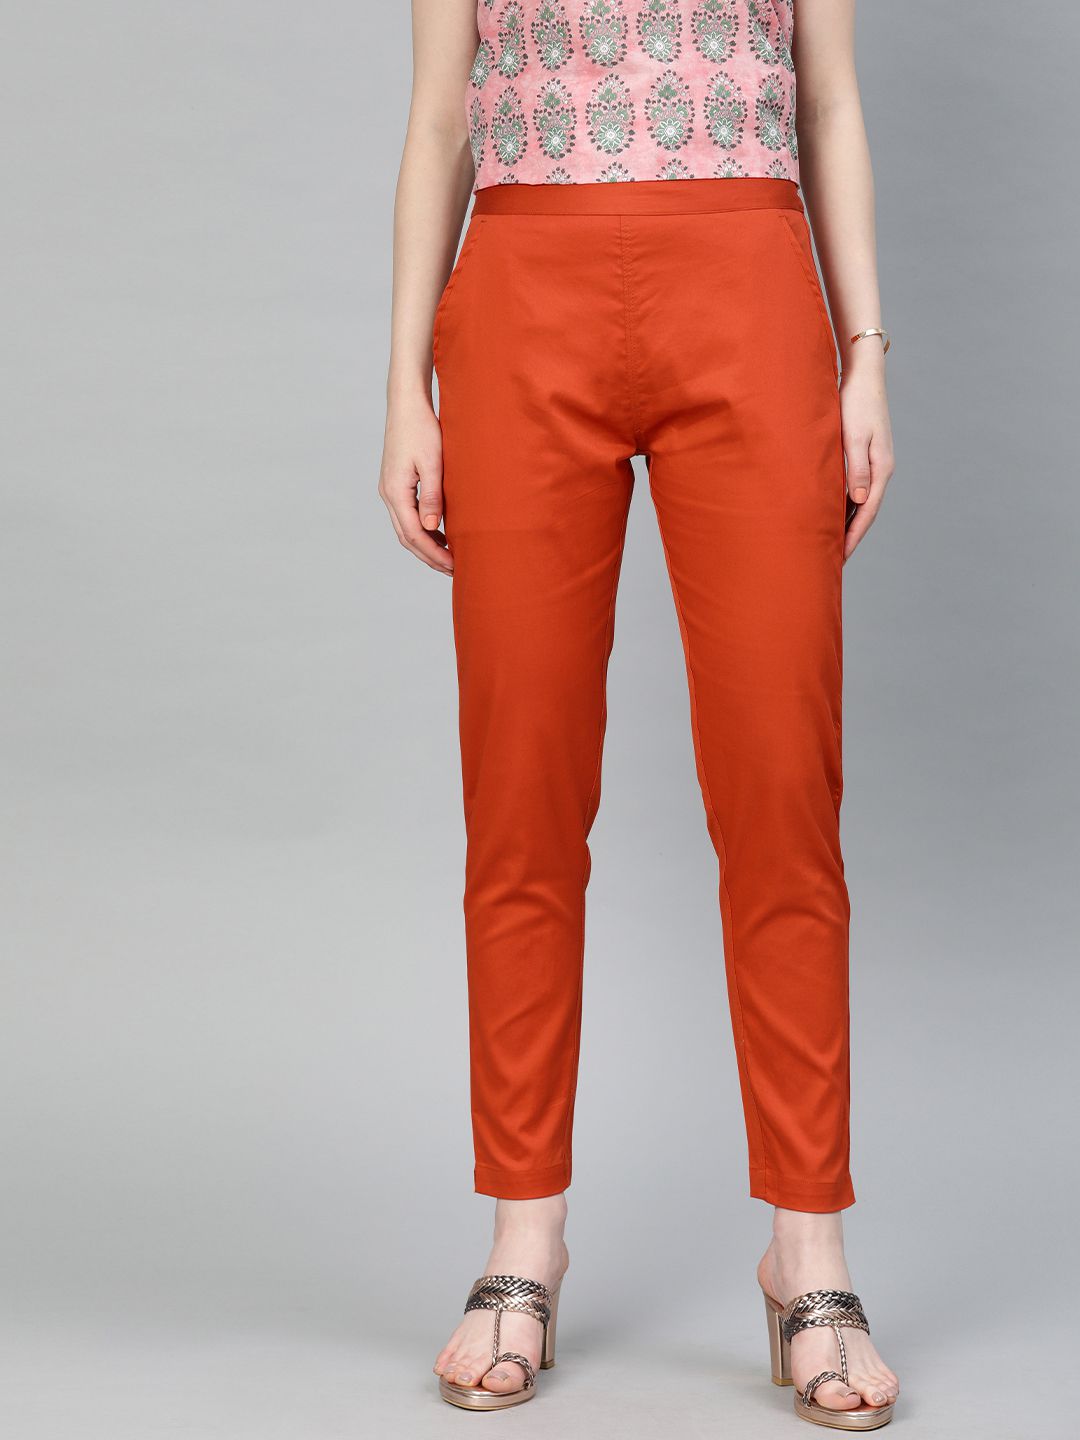 Shop Rust Orange Solid Cotton Lycra Pant